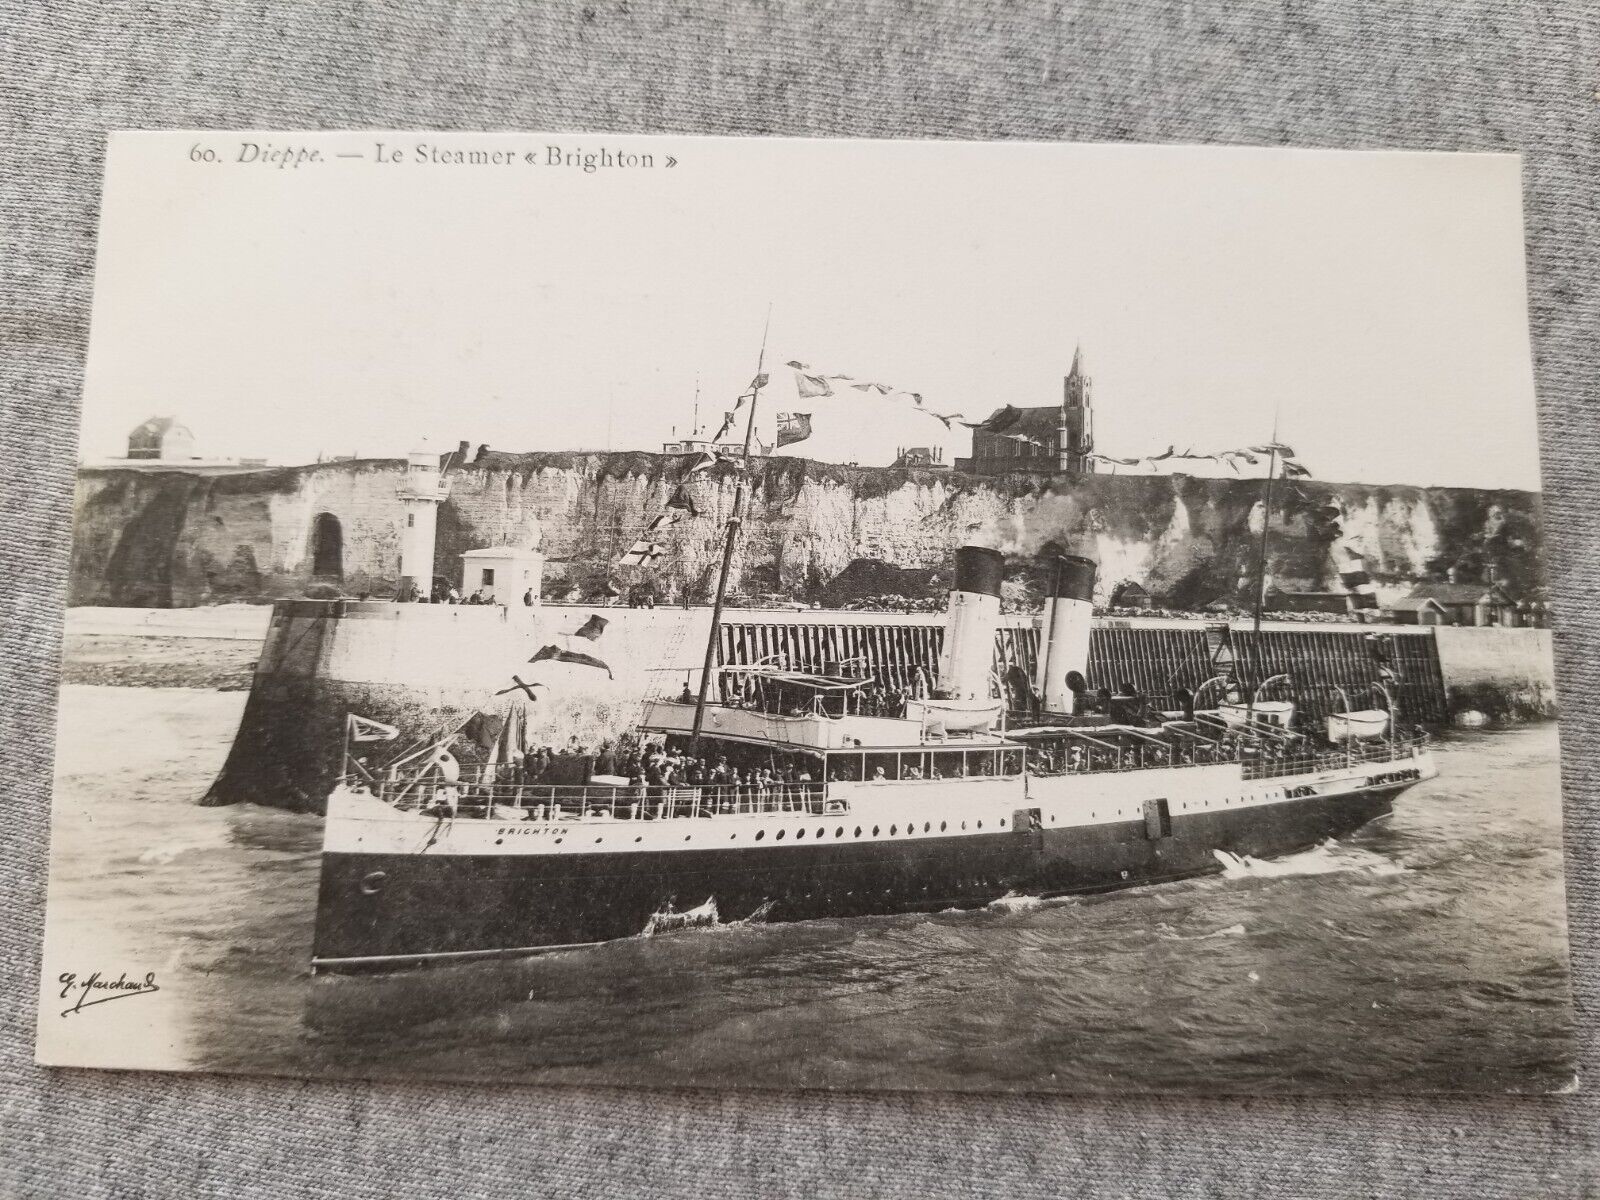 British Steamer Steam Ship Brighton at Dieppe France c 1910 Postcard Unposted